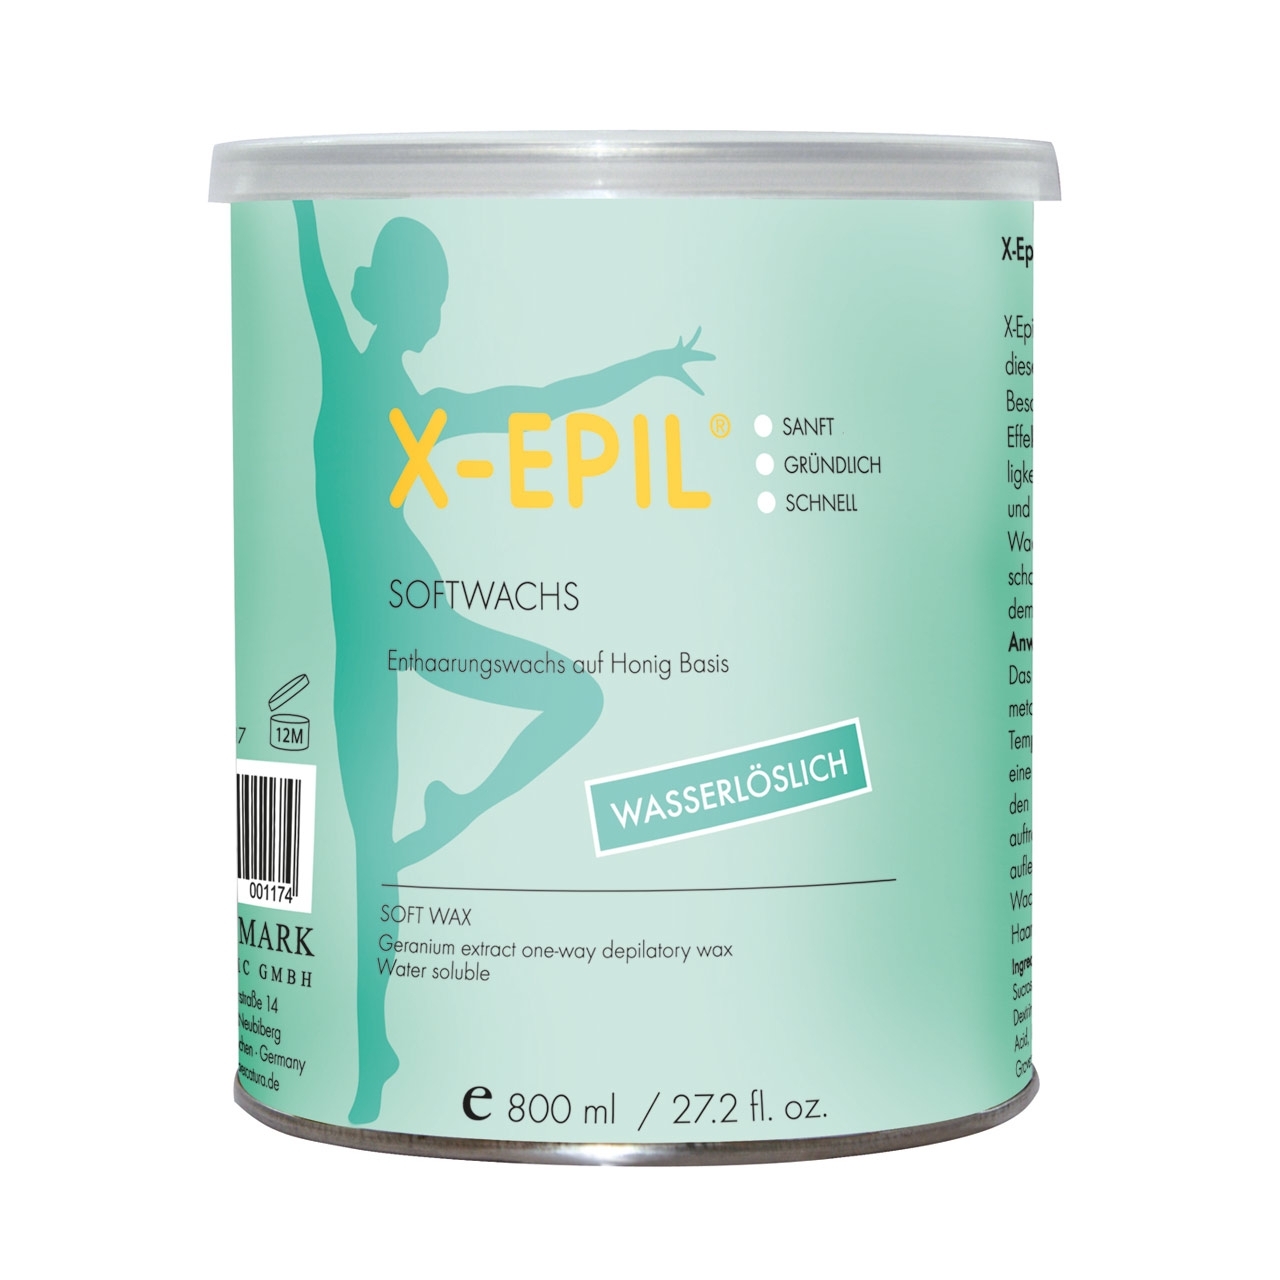 X-EPIL Warmwachs für normales Haar, 800ml wasserlöslich